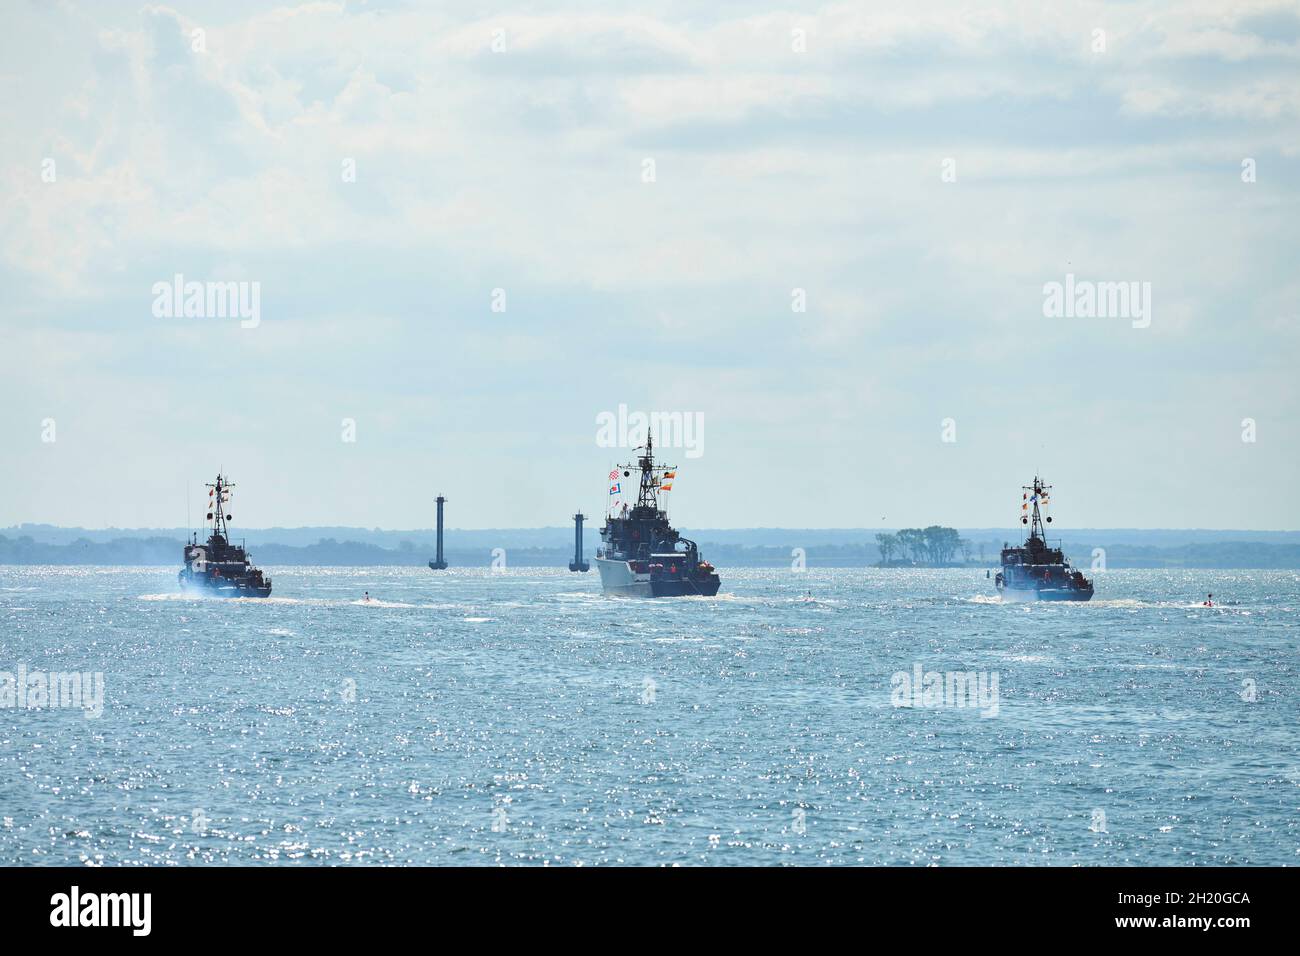 Tres acorazados buques de guerra maniobrando durante ejercicios navales en el Mar Báltico. Buques de guerra, barcos que realizan tareas en el mar, barcos de guerra militares que navegan, Nort Foto de stock